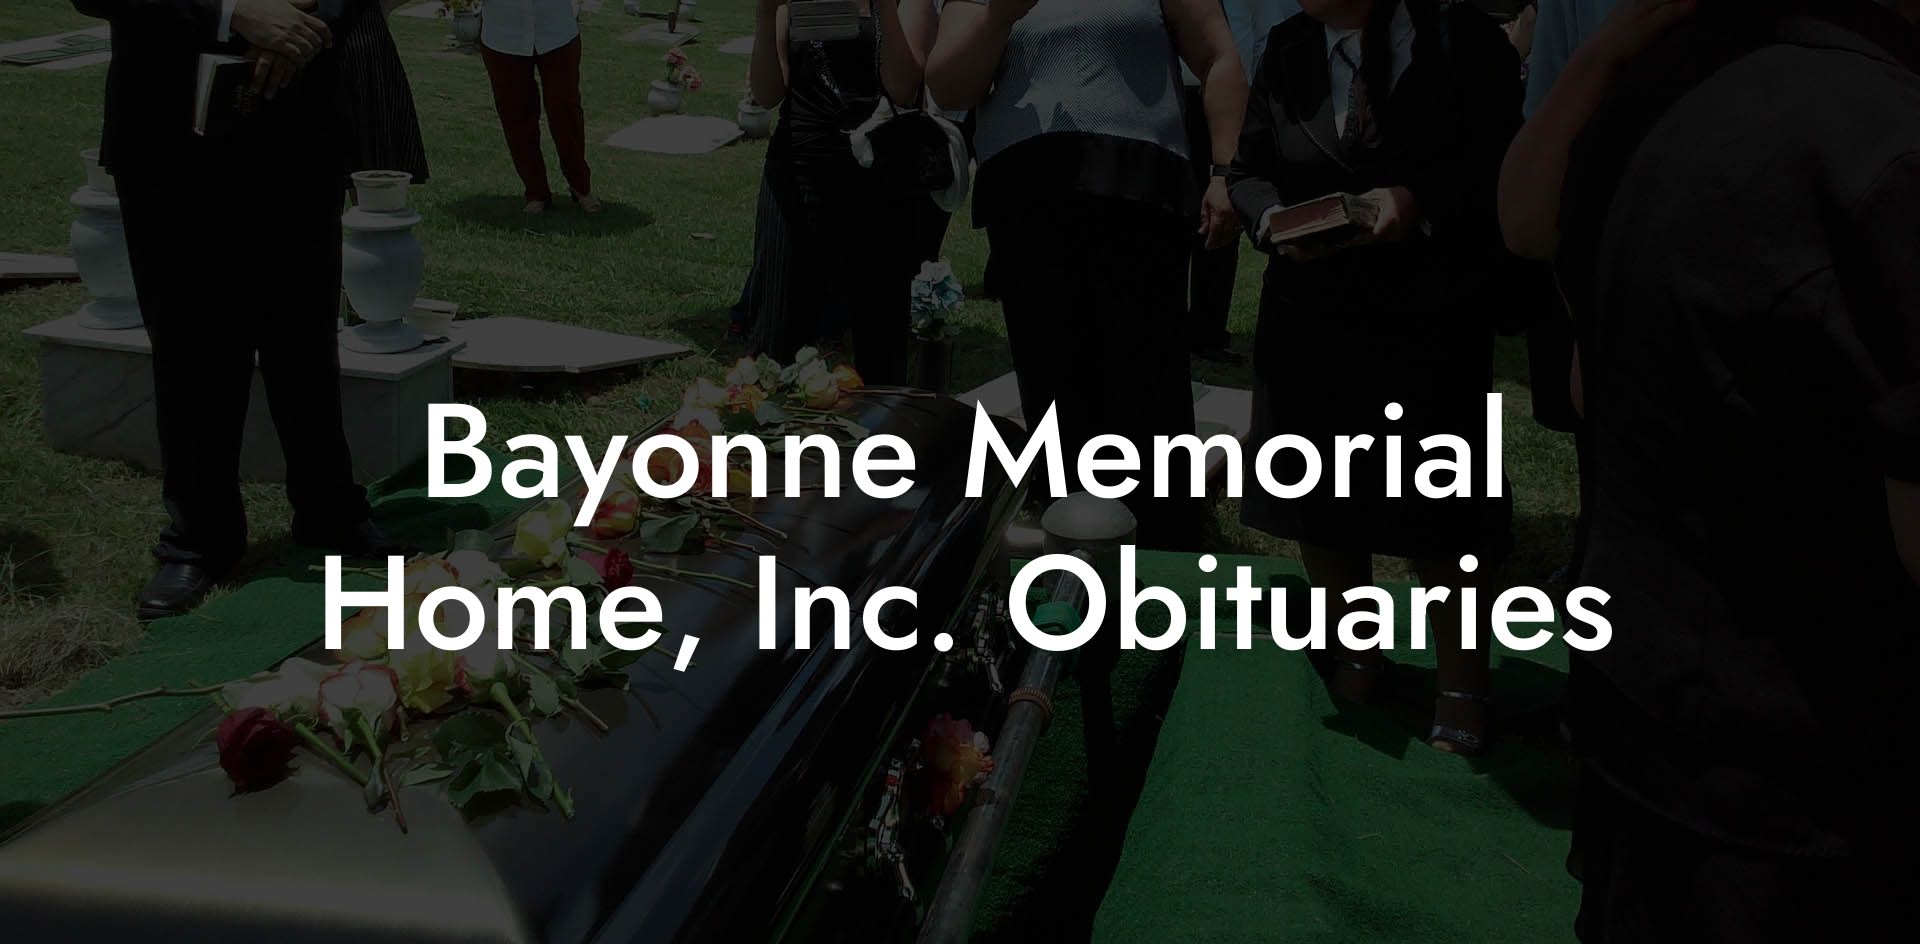 Bayonne Memorial Home, Inc. Obituaries